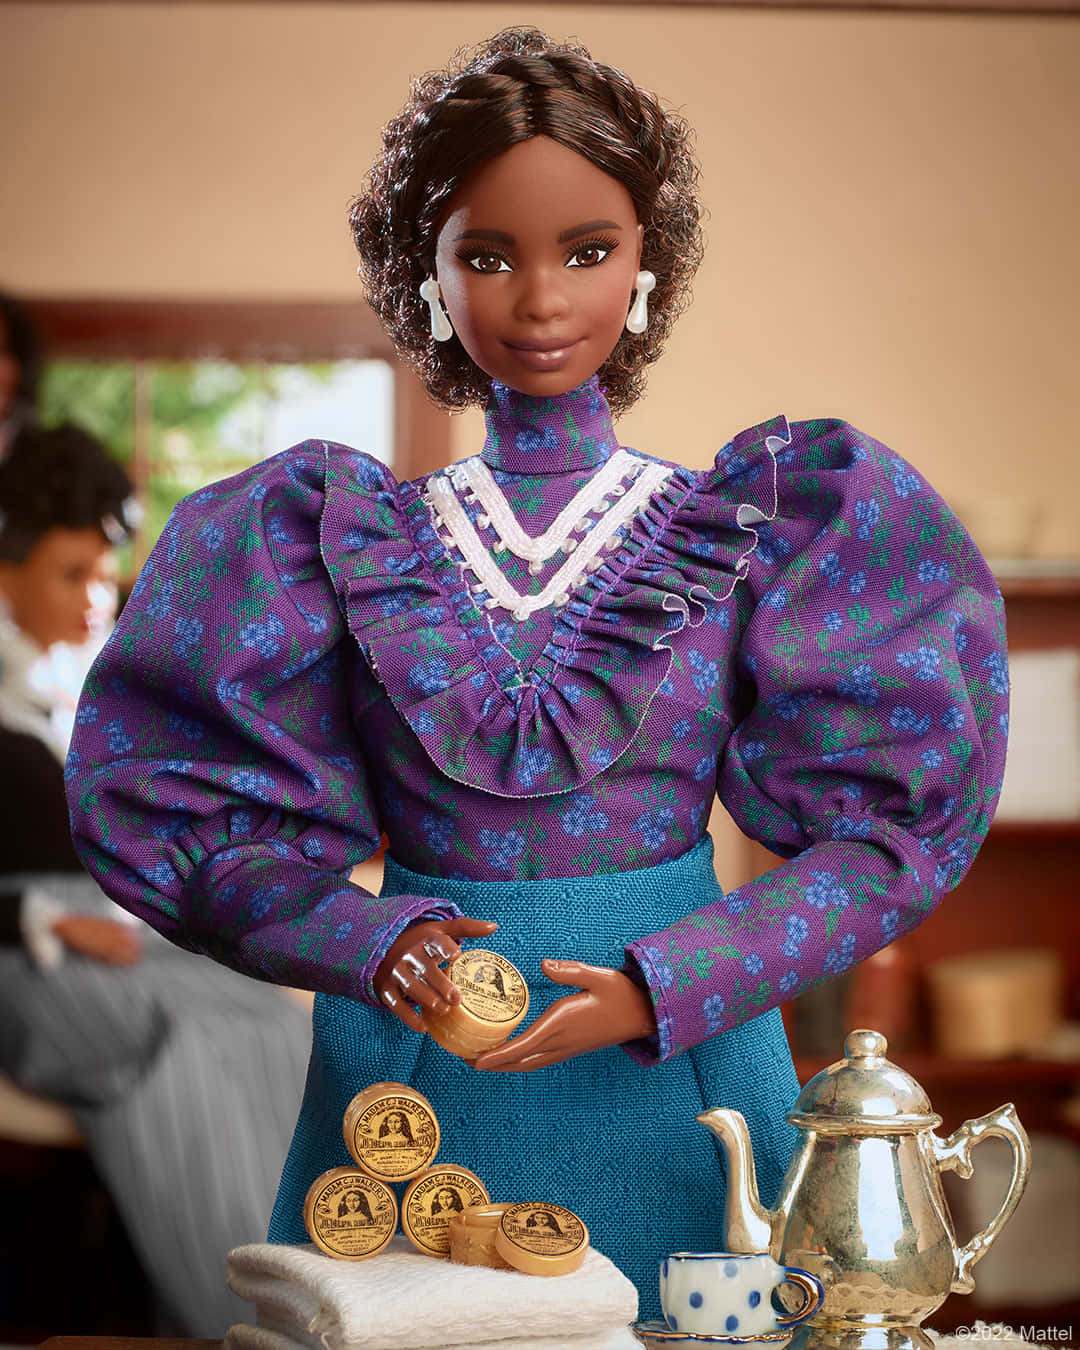 Barbiepuppe - Ein Perfekter Begleiter Für Junge Mädchen